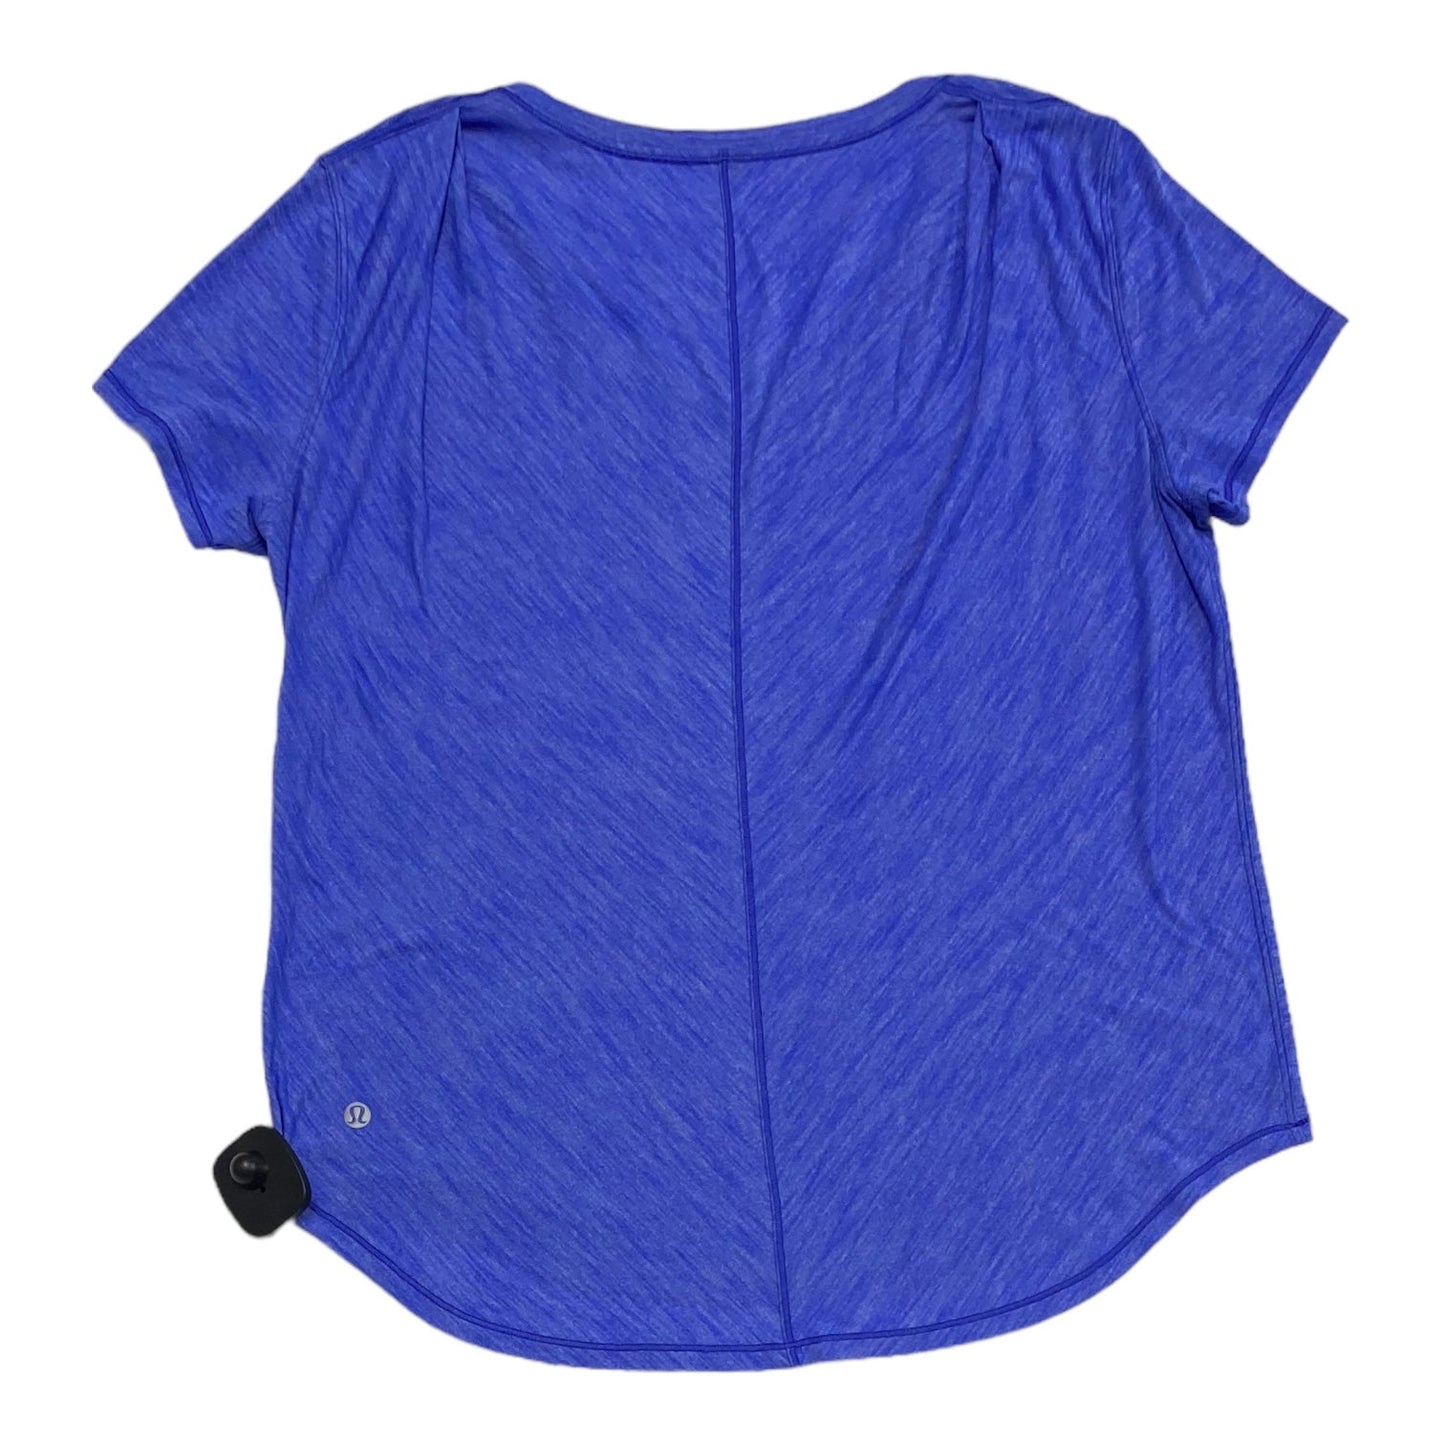 Blue Athletic Top Short Sleeve Lululemon, Size M